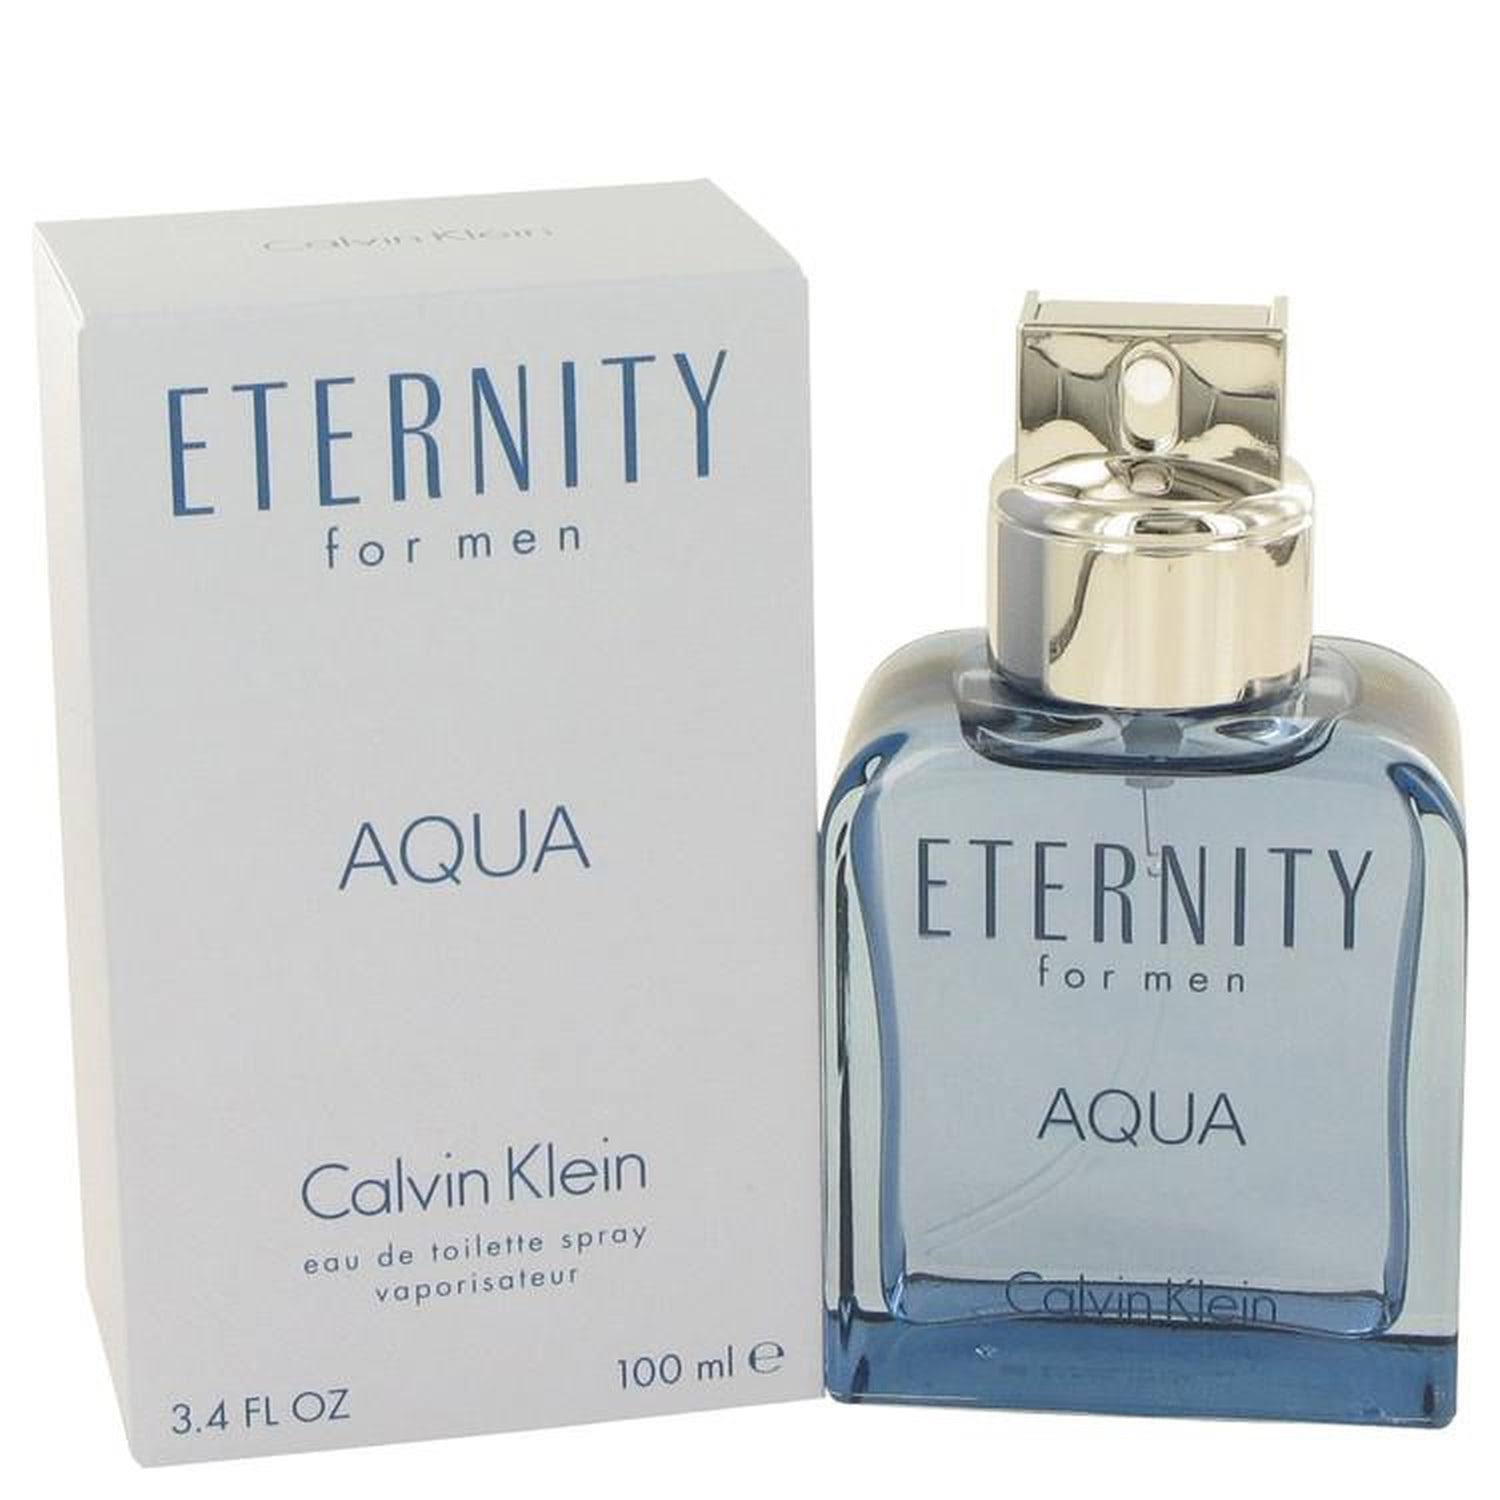 Calvin Klein Eternity for Men Eau De Toilette Spray - Aqua, 100ml